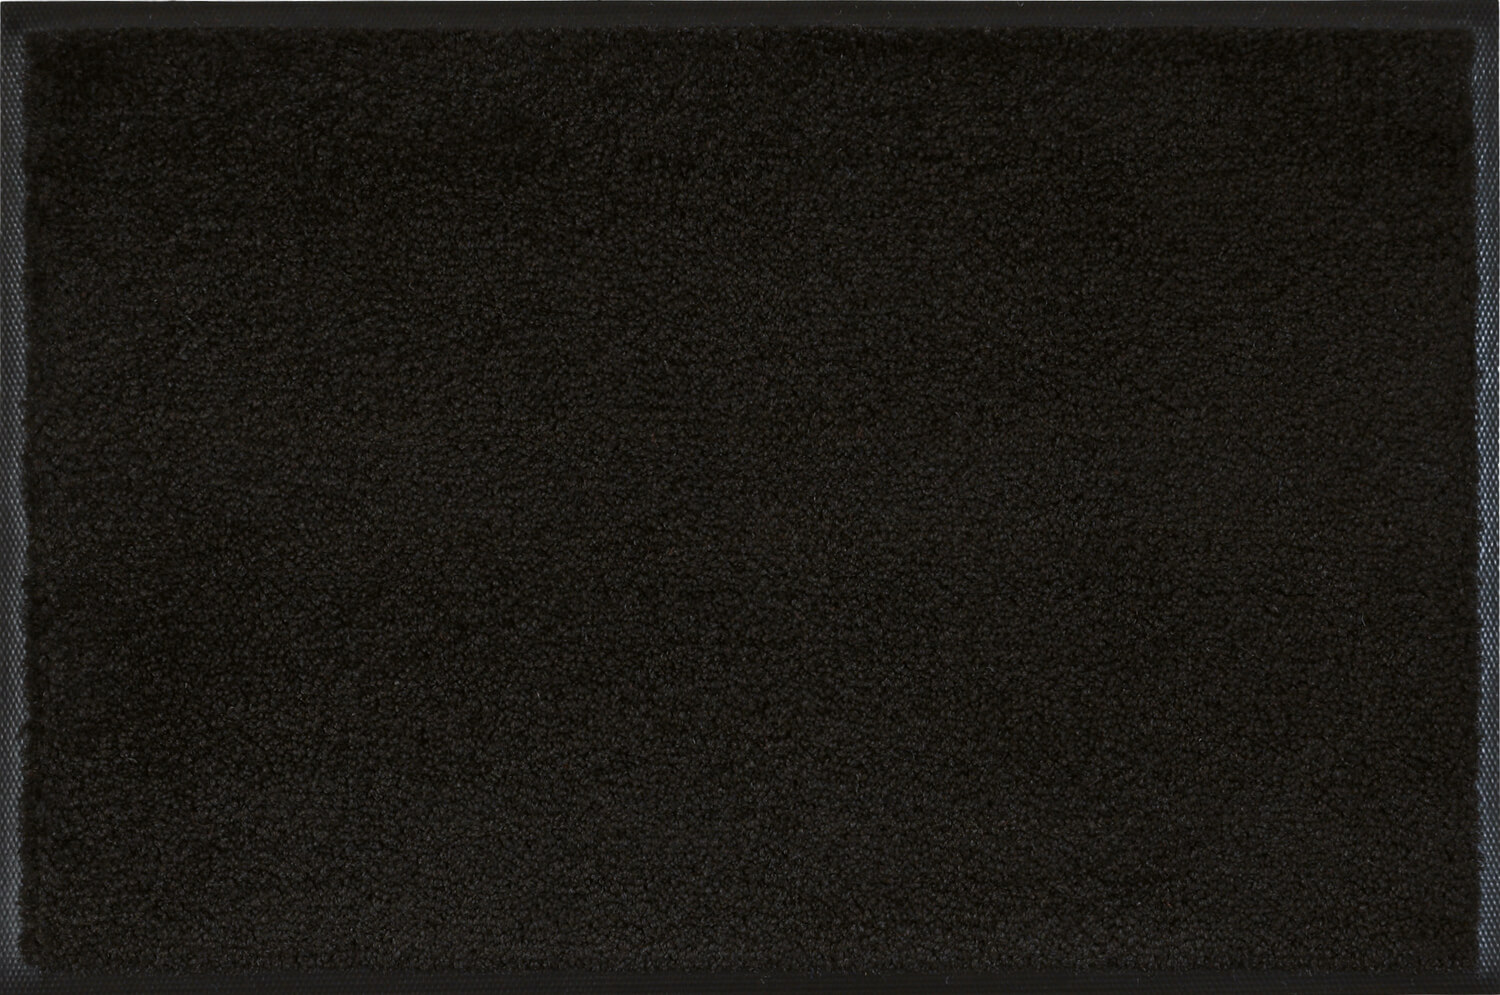 Fußmatte uni Raven Black, Wash & Dry Monocolour, 040 x 060 cm, Draufsicht